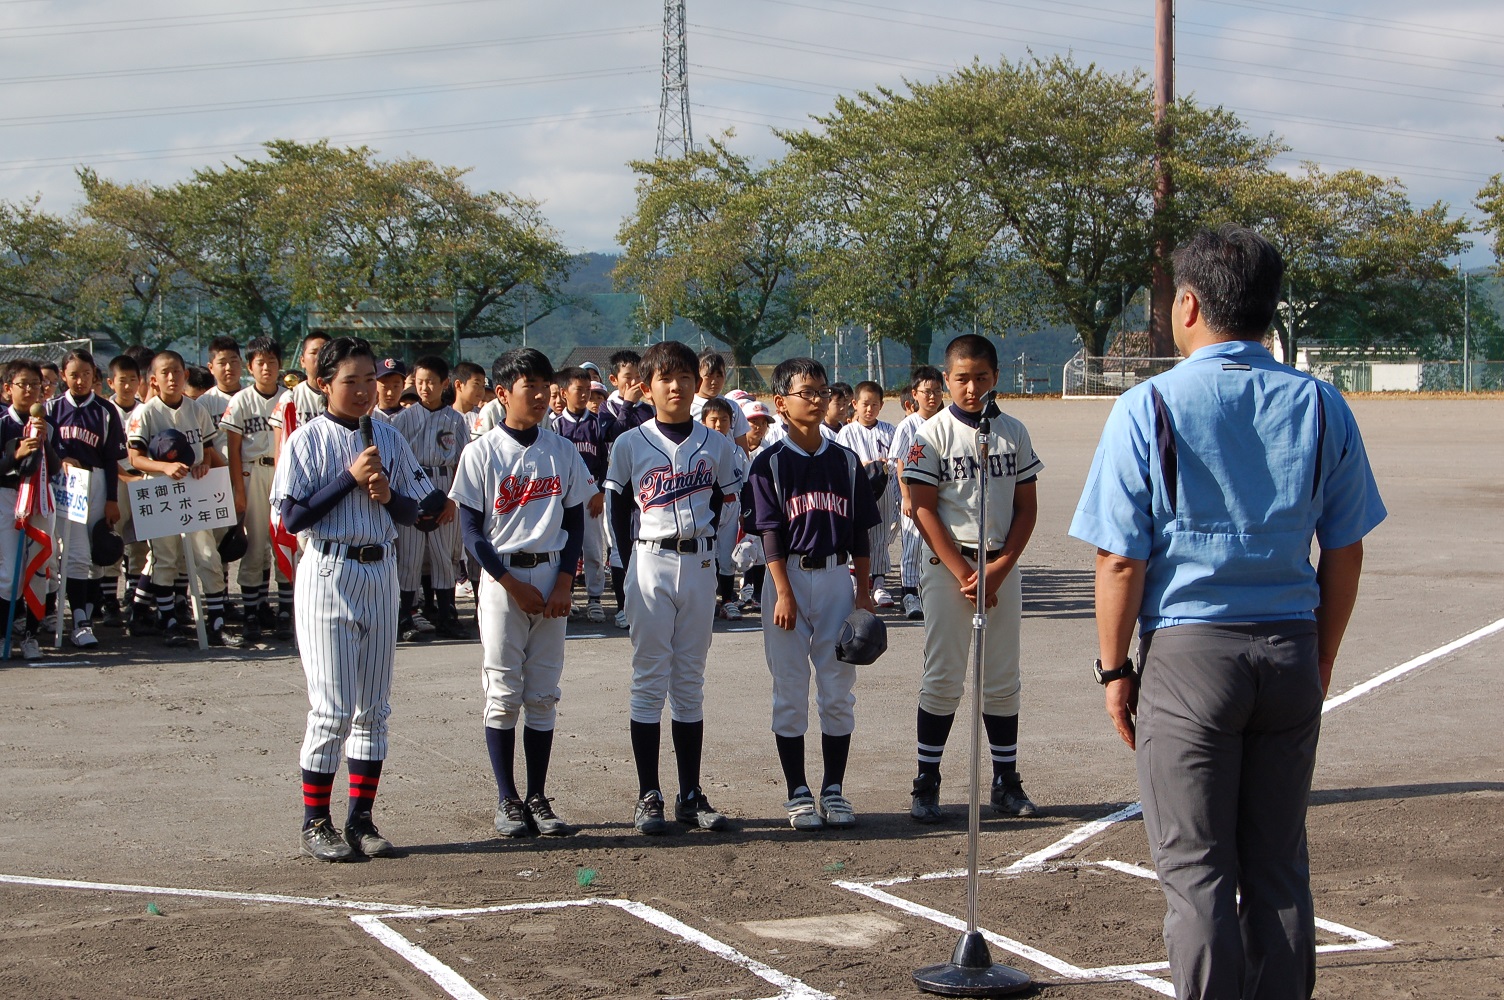 コトヒラ杯スポーツ少年団野球大会に集まった子どもたちの様子